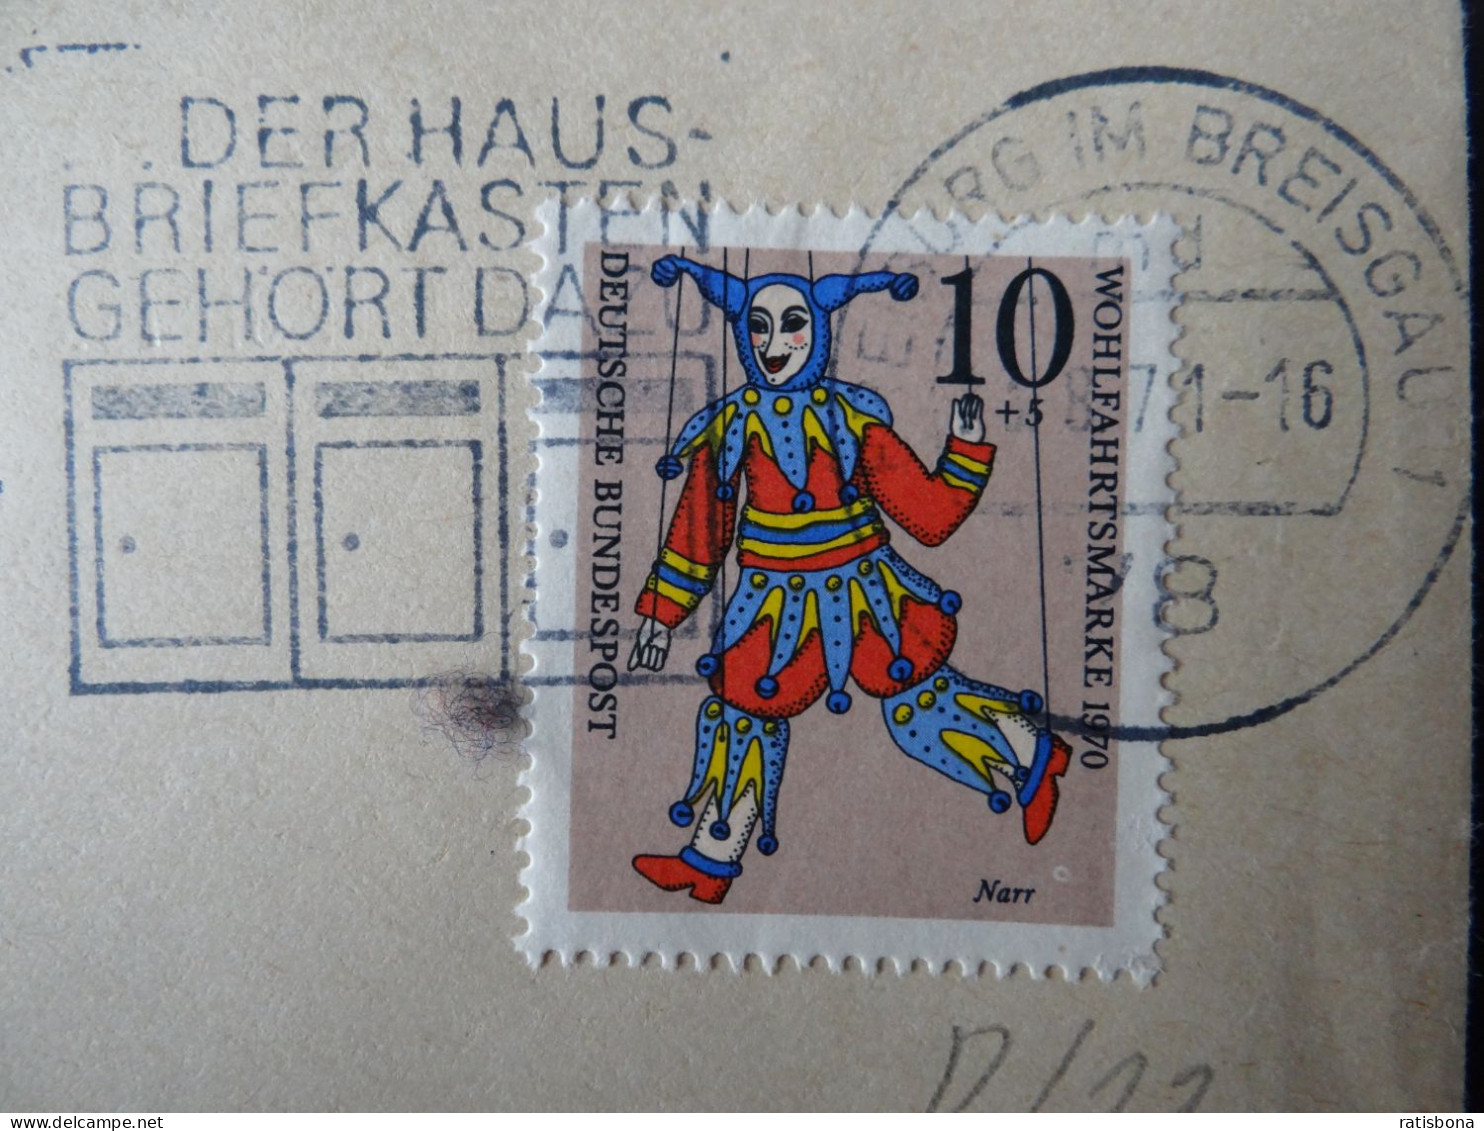 7800 Freiburg I.Breisgau - Der Hausbriefkasten Gehört Dazu - Werbestempel 1971 - Frankeermachines (EMA)